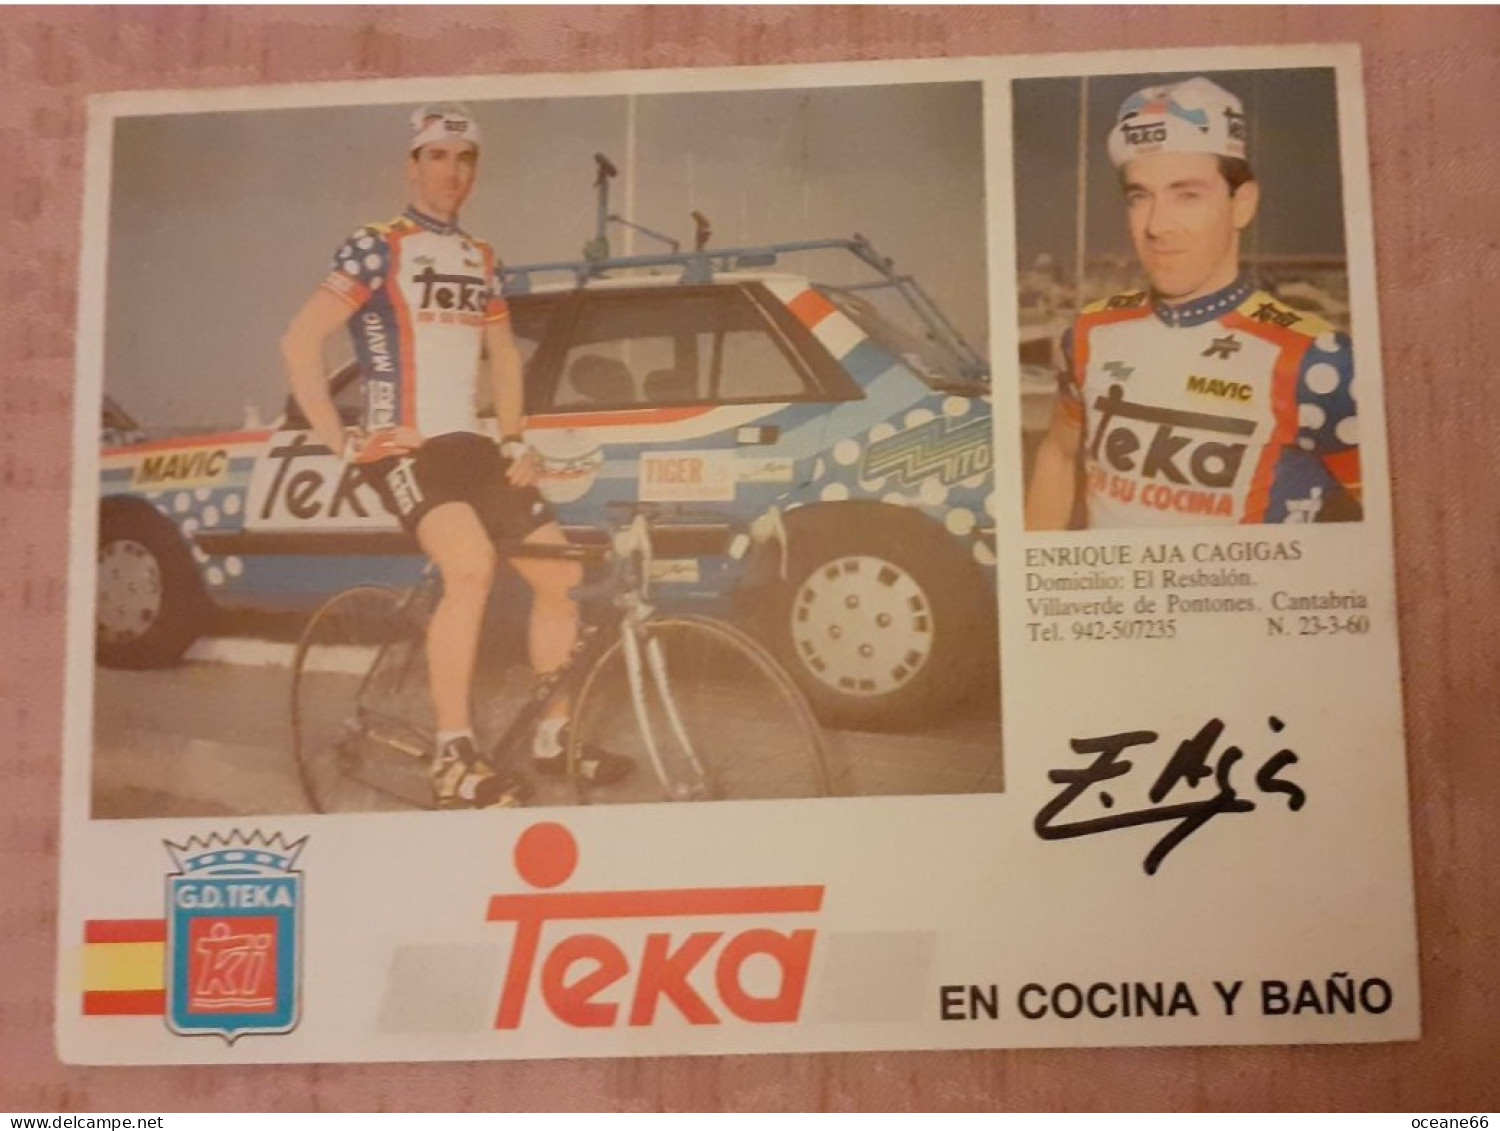 Autographe Enrique Aja Cagigas Teka Format 12 X 16 Cm - Cyclisme